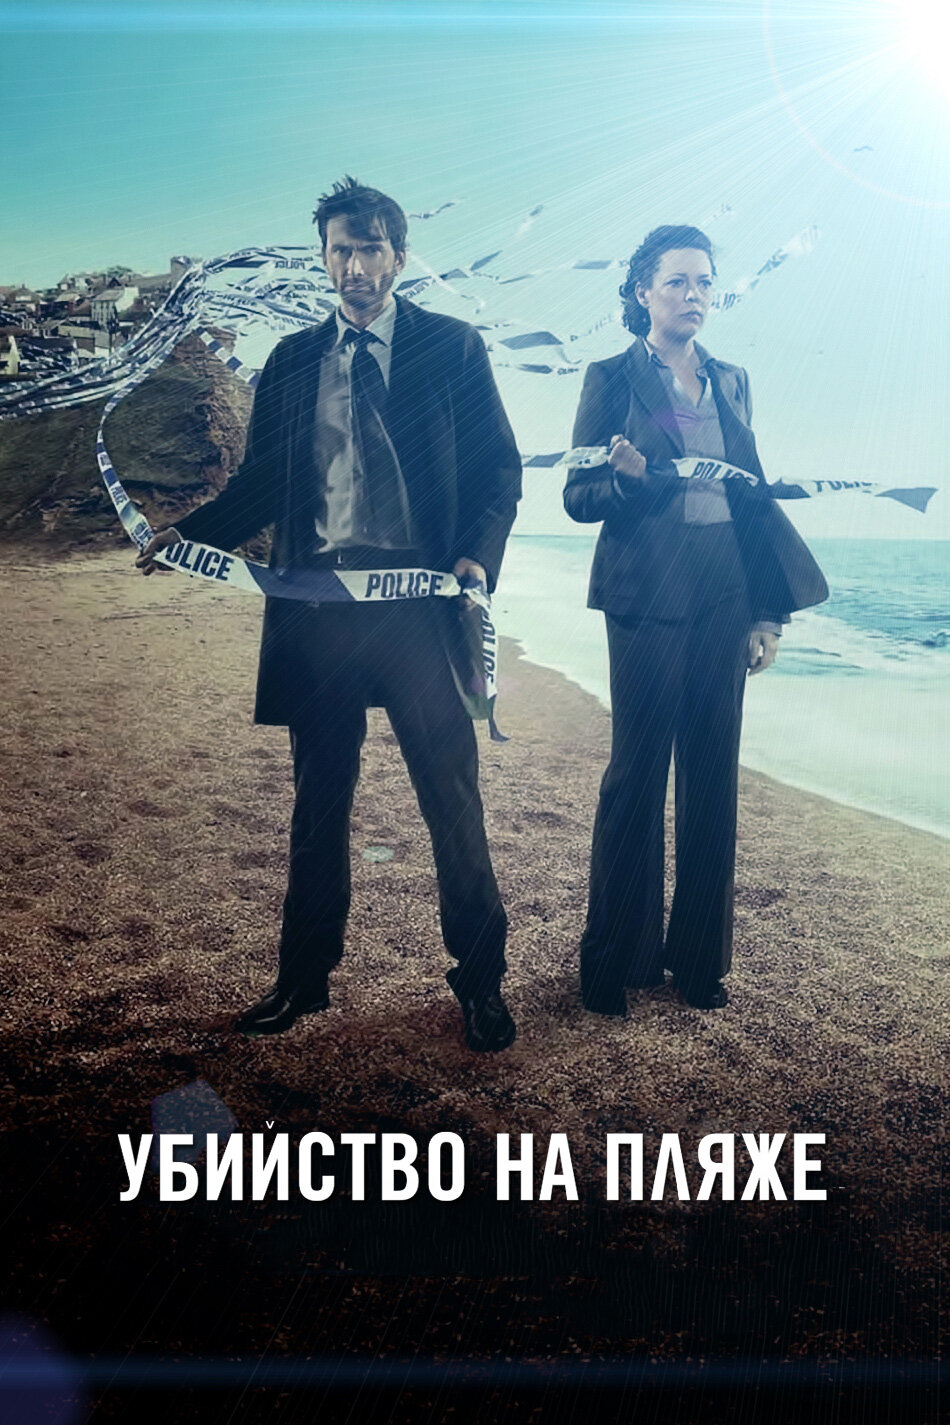 Смотреть сериал Убийство на пляже 2013 года онлайн